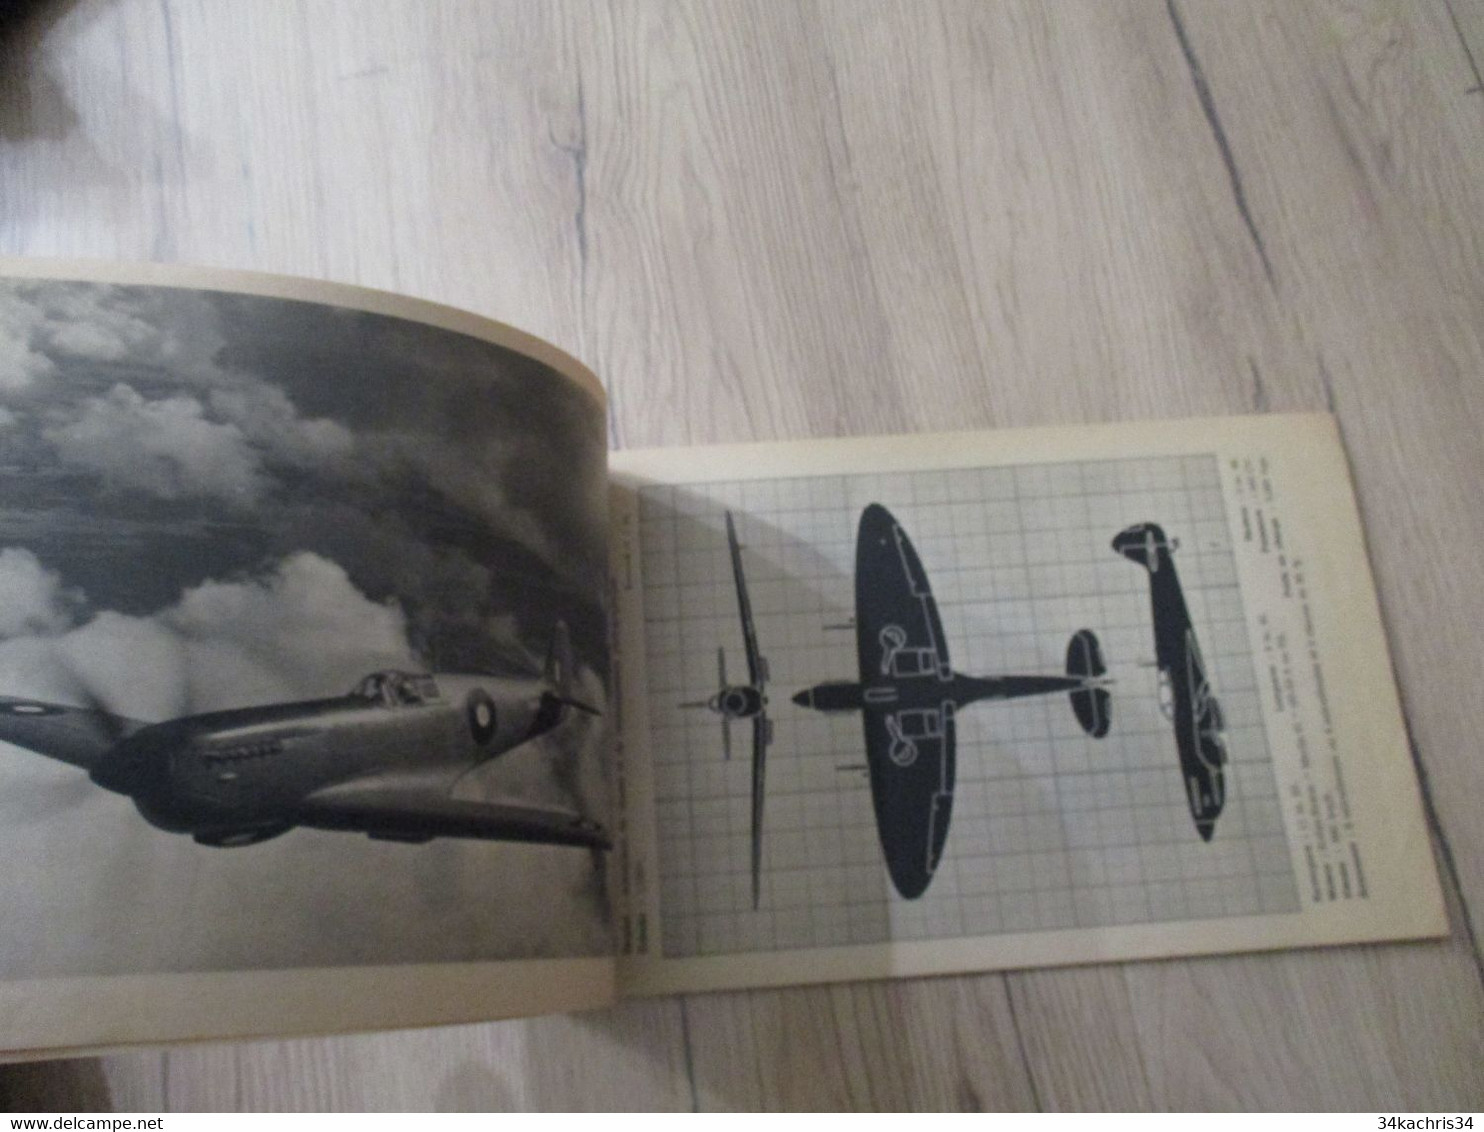 Catalogue Avions Anglais Fascicule N°2 France Editions Presse 1945 Photos Plans Caractéristiques - Aviation